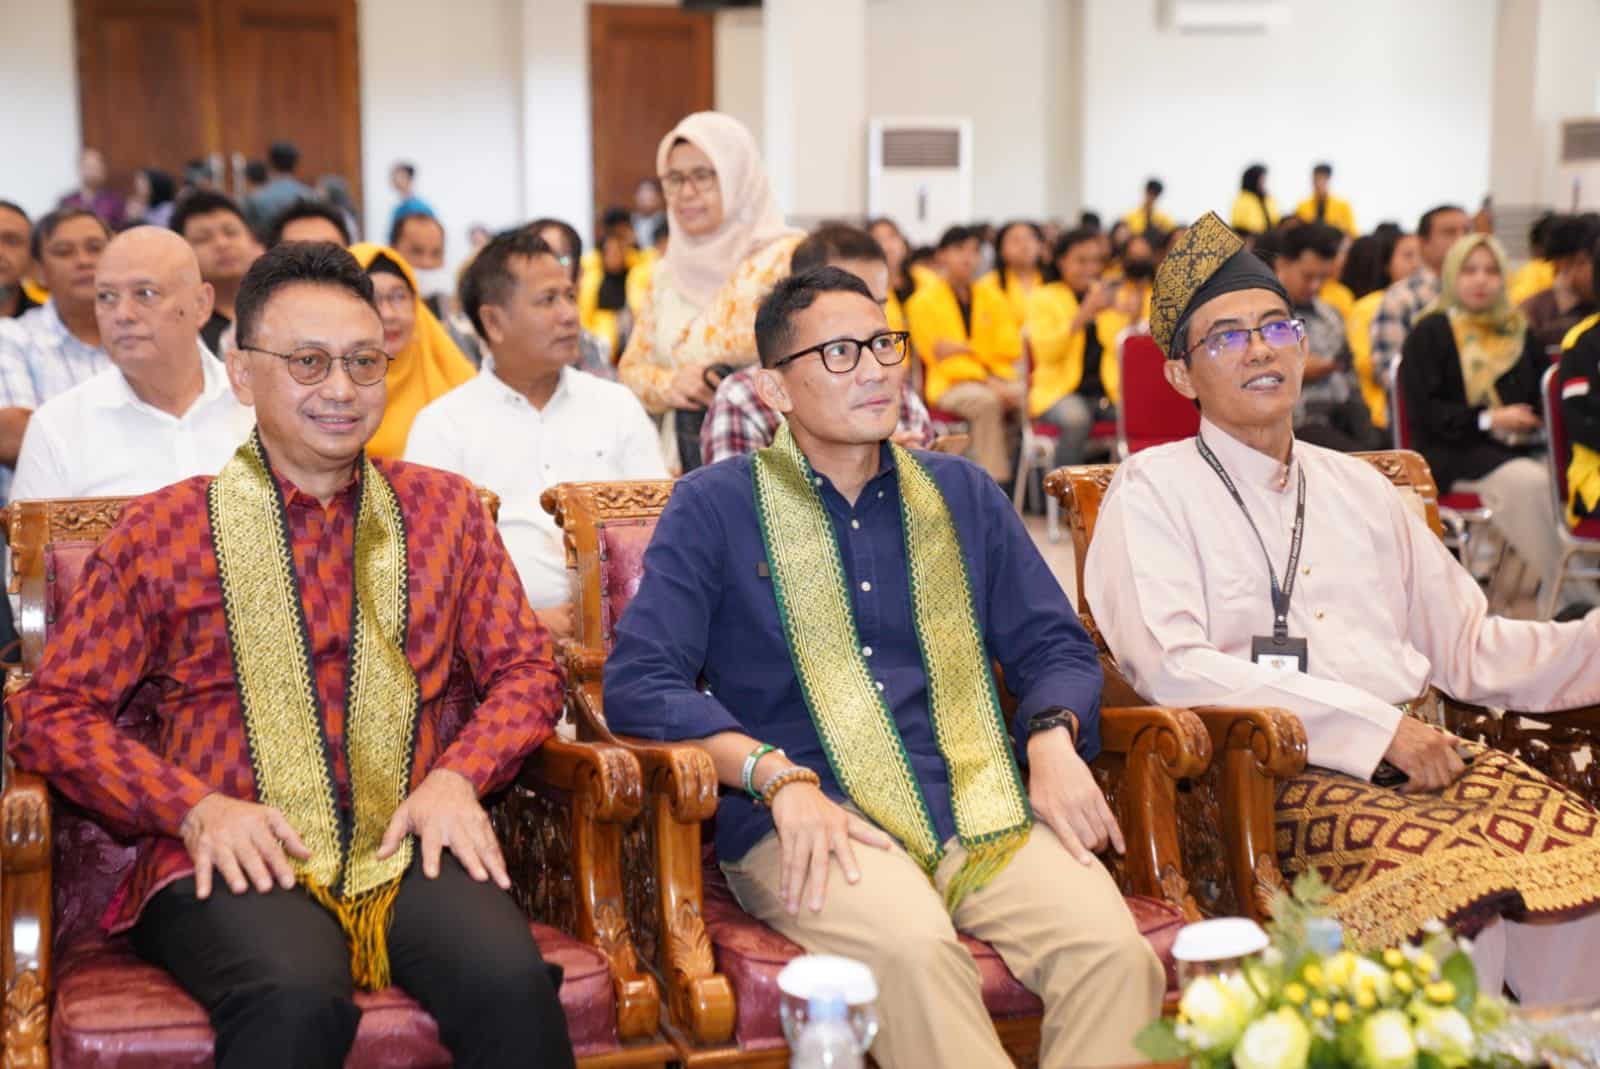 Menparekraf RI, Sandiaga Uno dan Wali Kota Pontianak, Edi Rusdi Kamtono menjadi keynote speaker pada kuliah umum peran pemerintah dalam pemberdayaan UMKM. (Foto: Prokopim Pontianak)